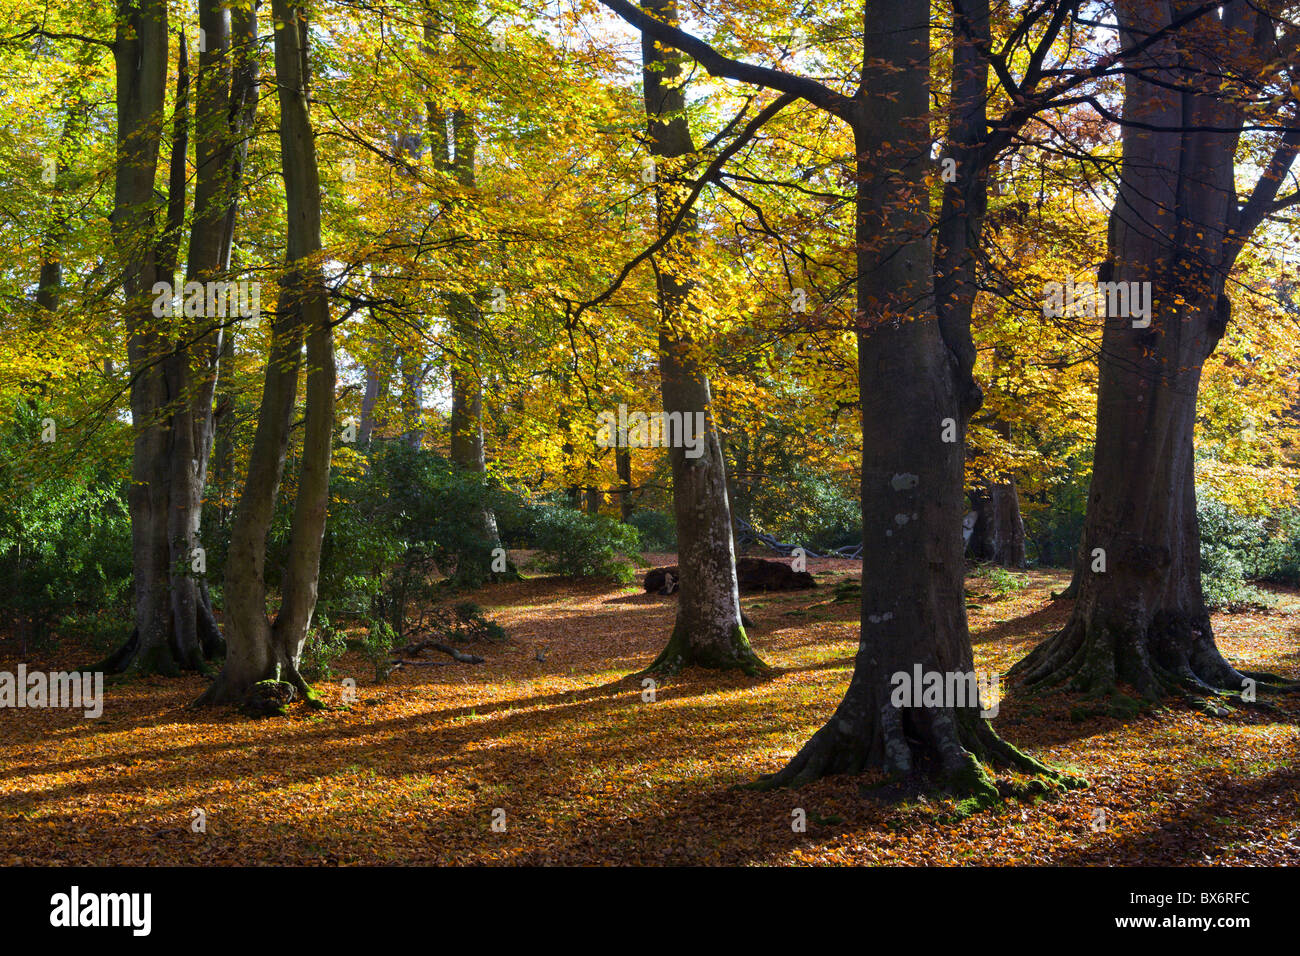 Feuillage d'automne dans un bois de feuillus, parc national New Forest, Hampshire, Angleterre. L'automne (novembre) 2007 Banque D'Images